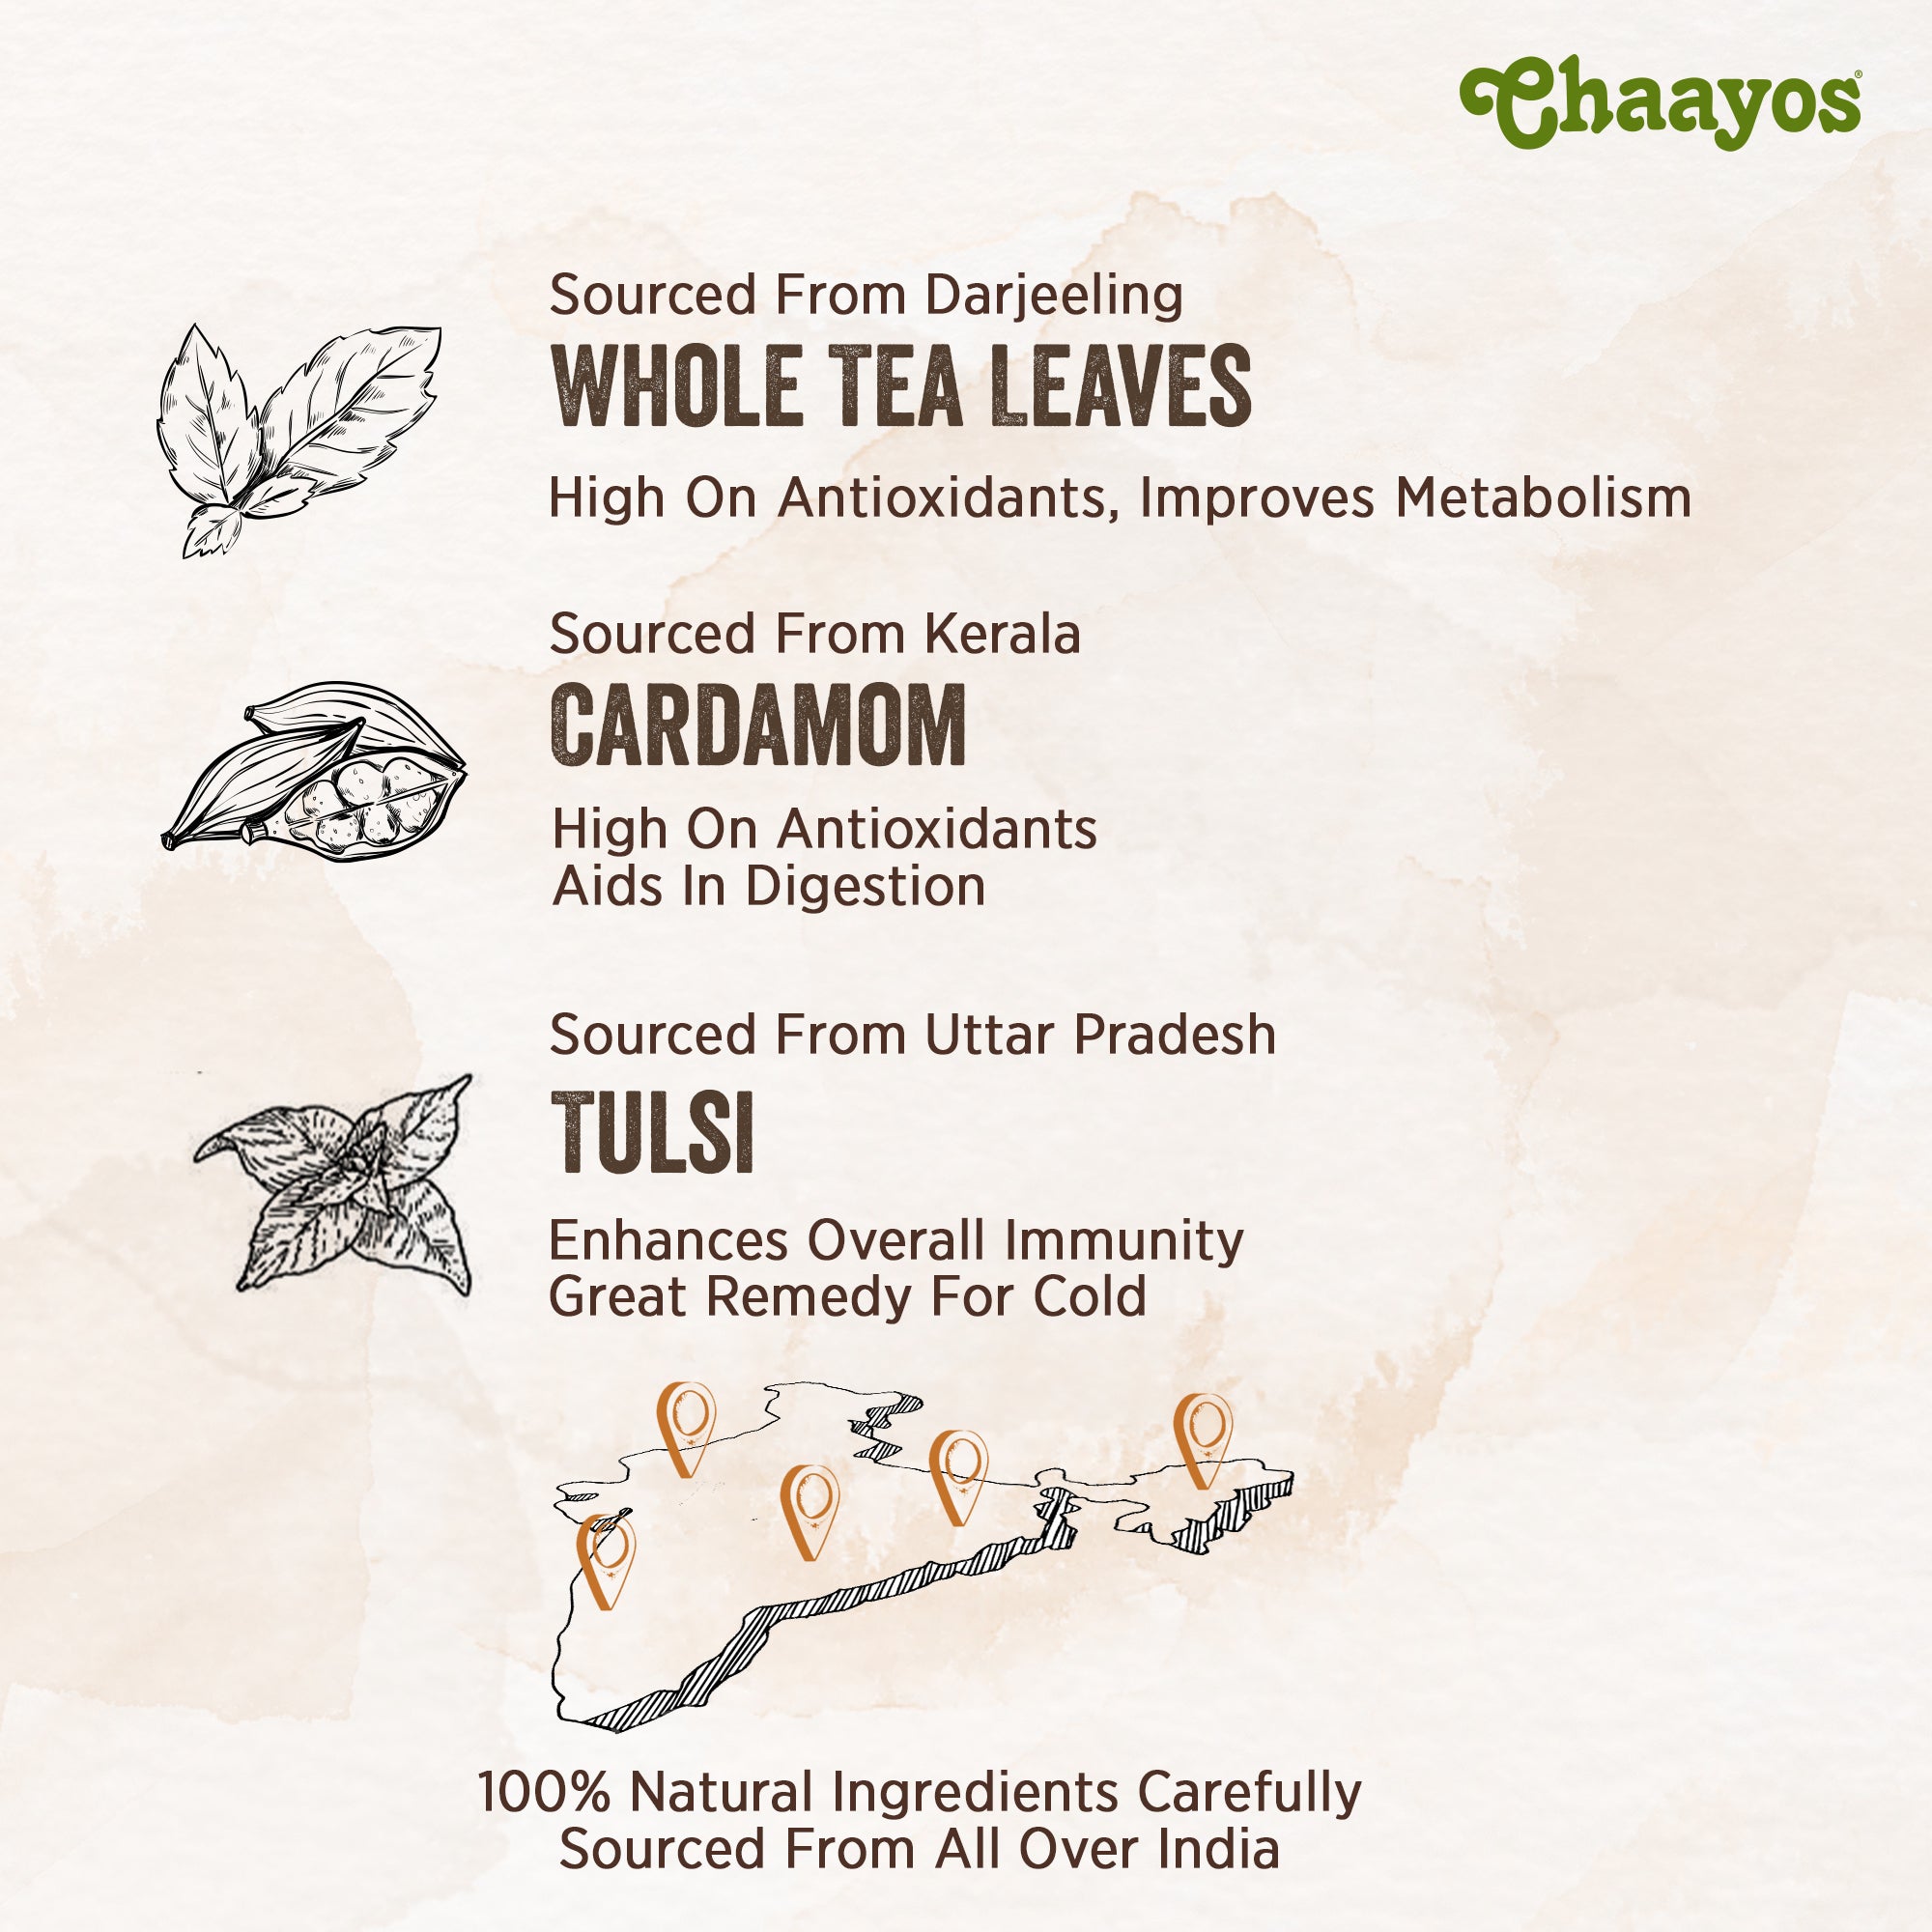 Chaayos Green Tea Bags - Tulsi Cardamom